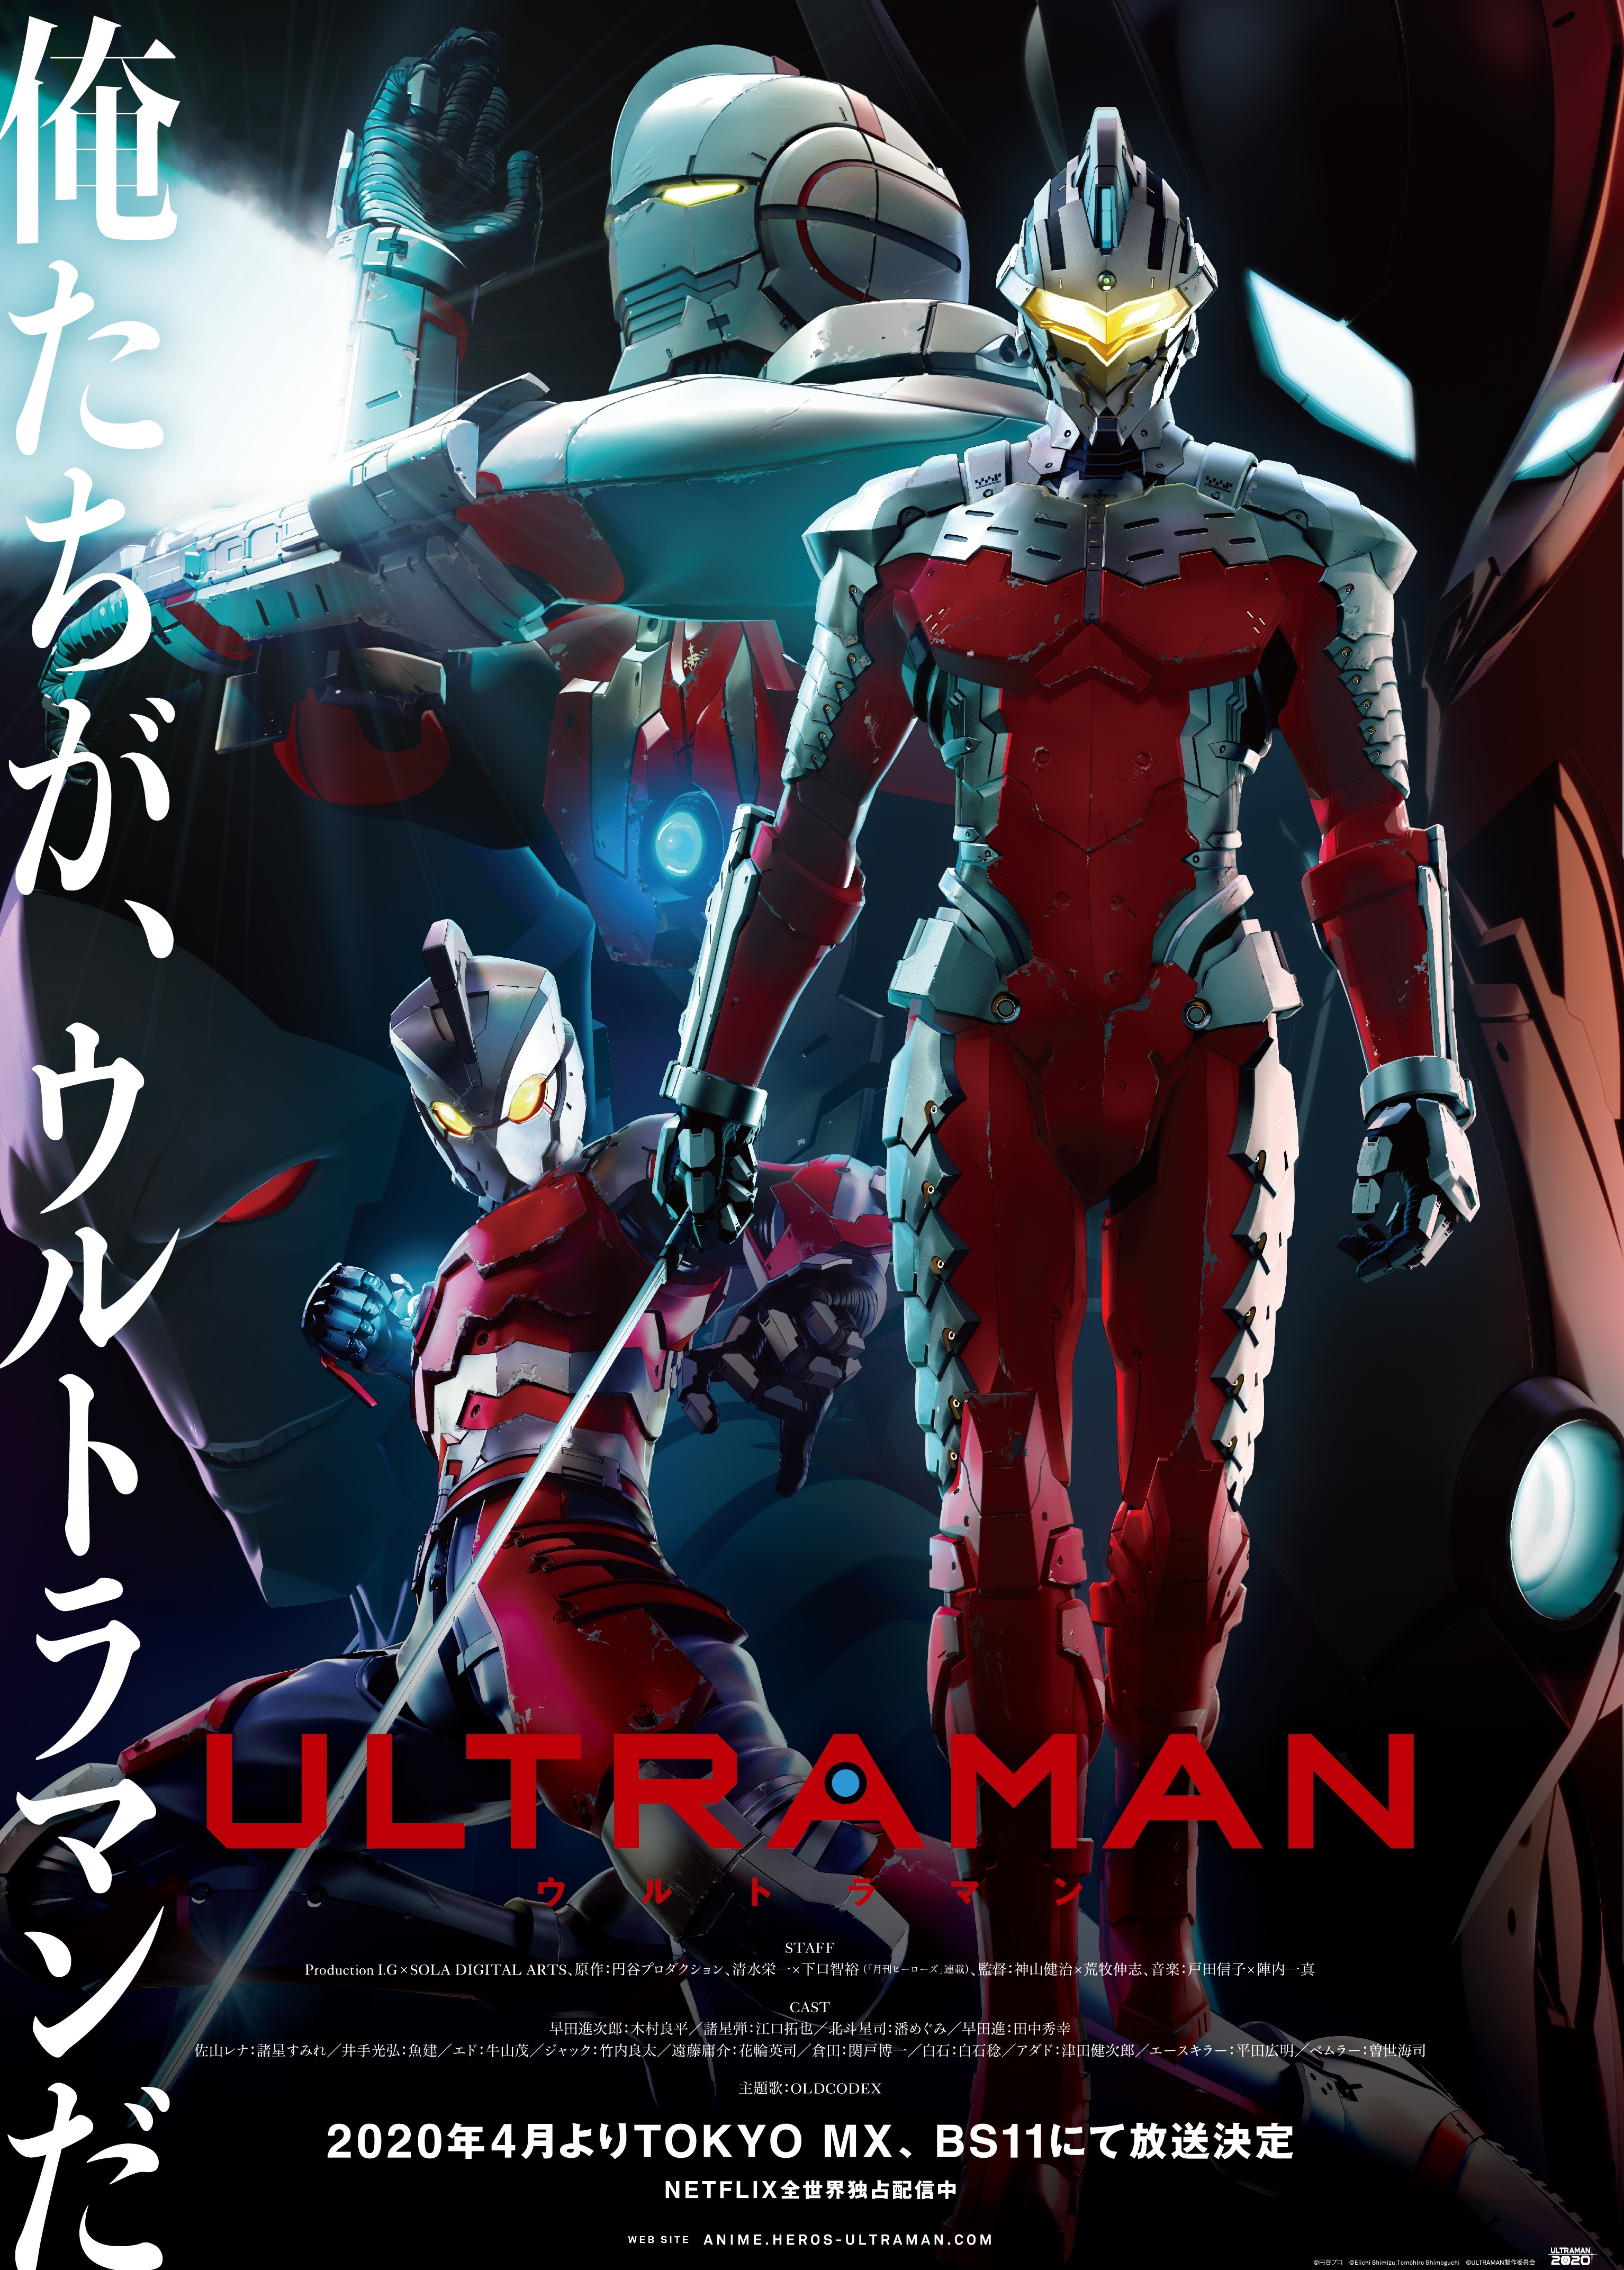 アニメ Ultraman オリジナル実写pvの制作開始 アキバ総研